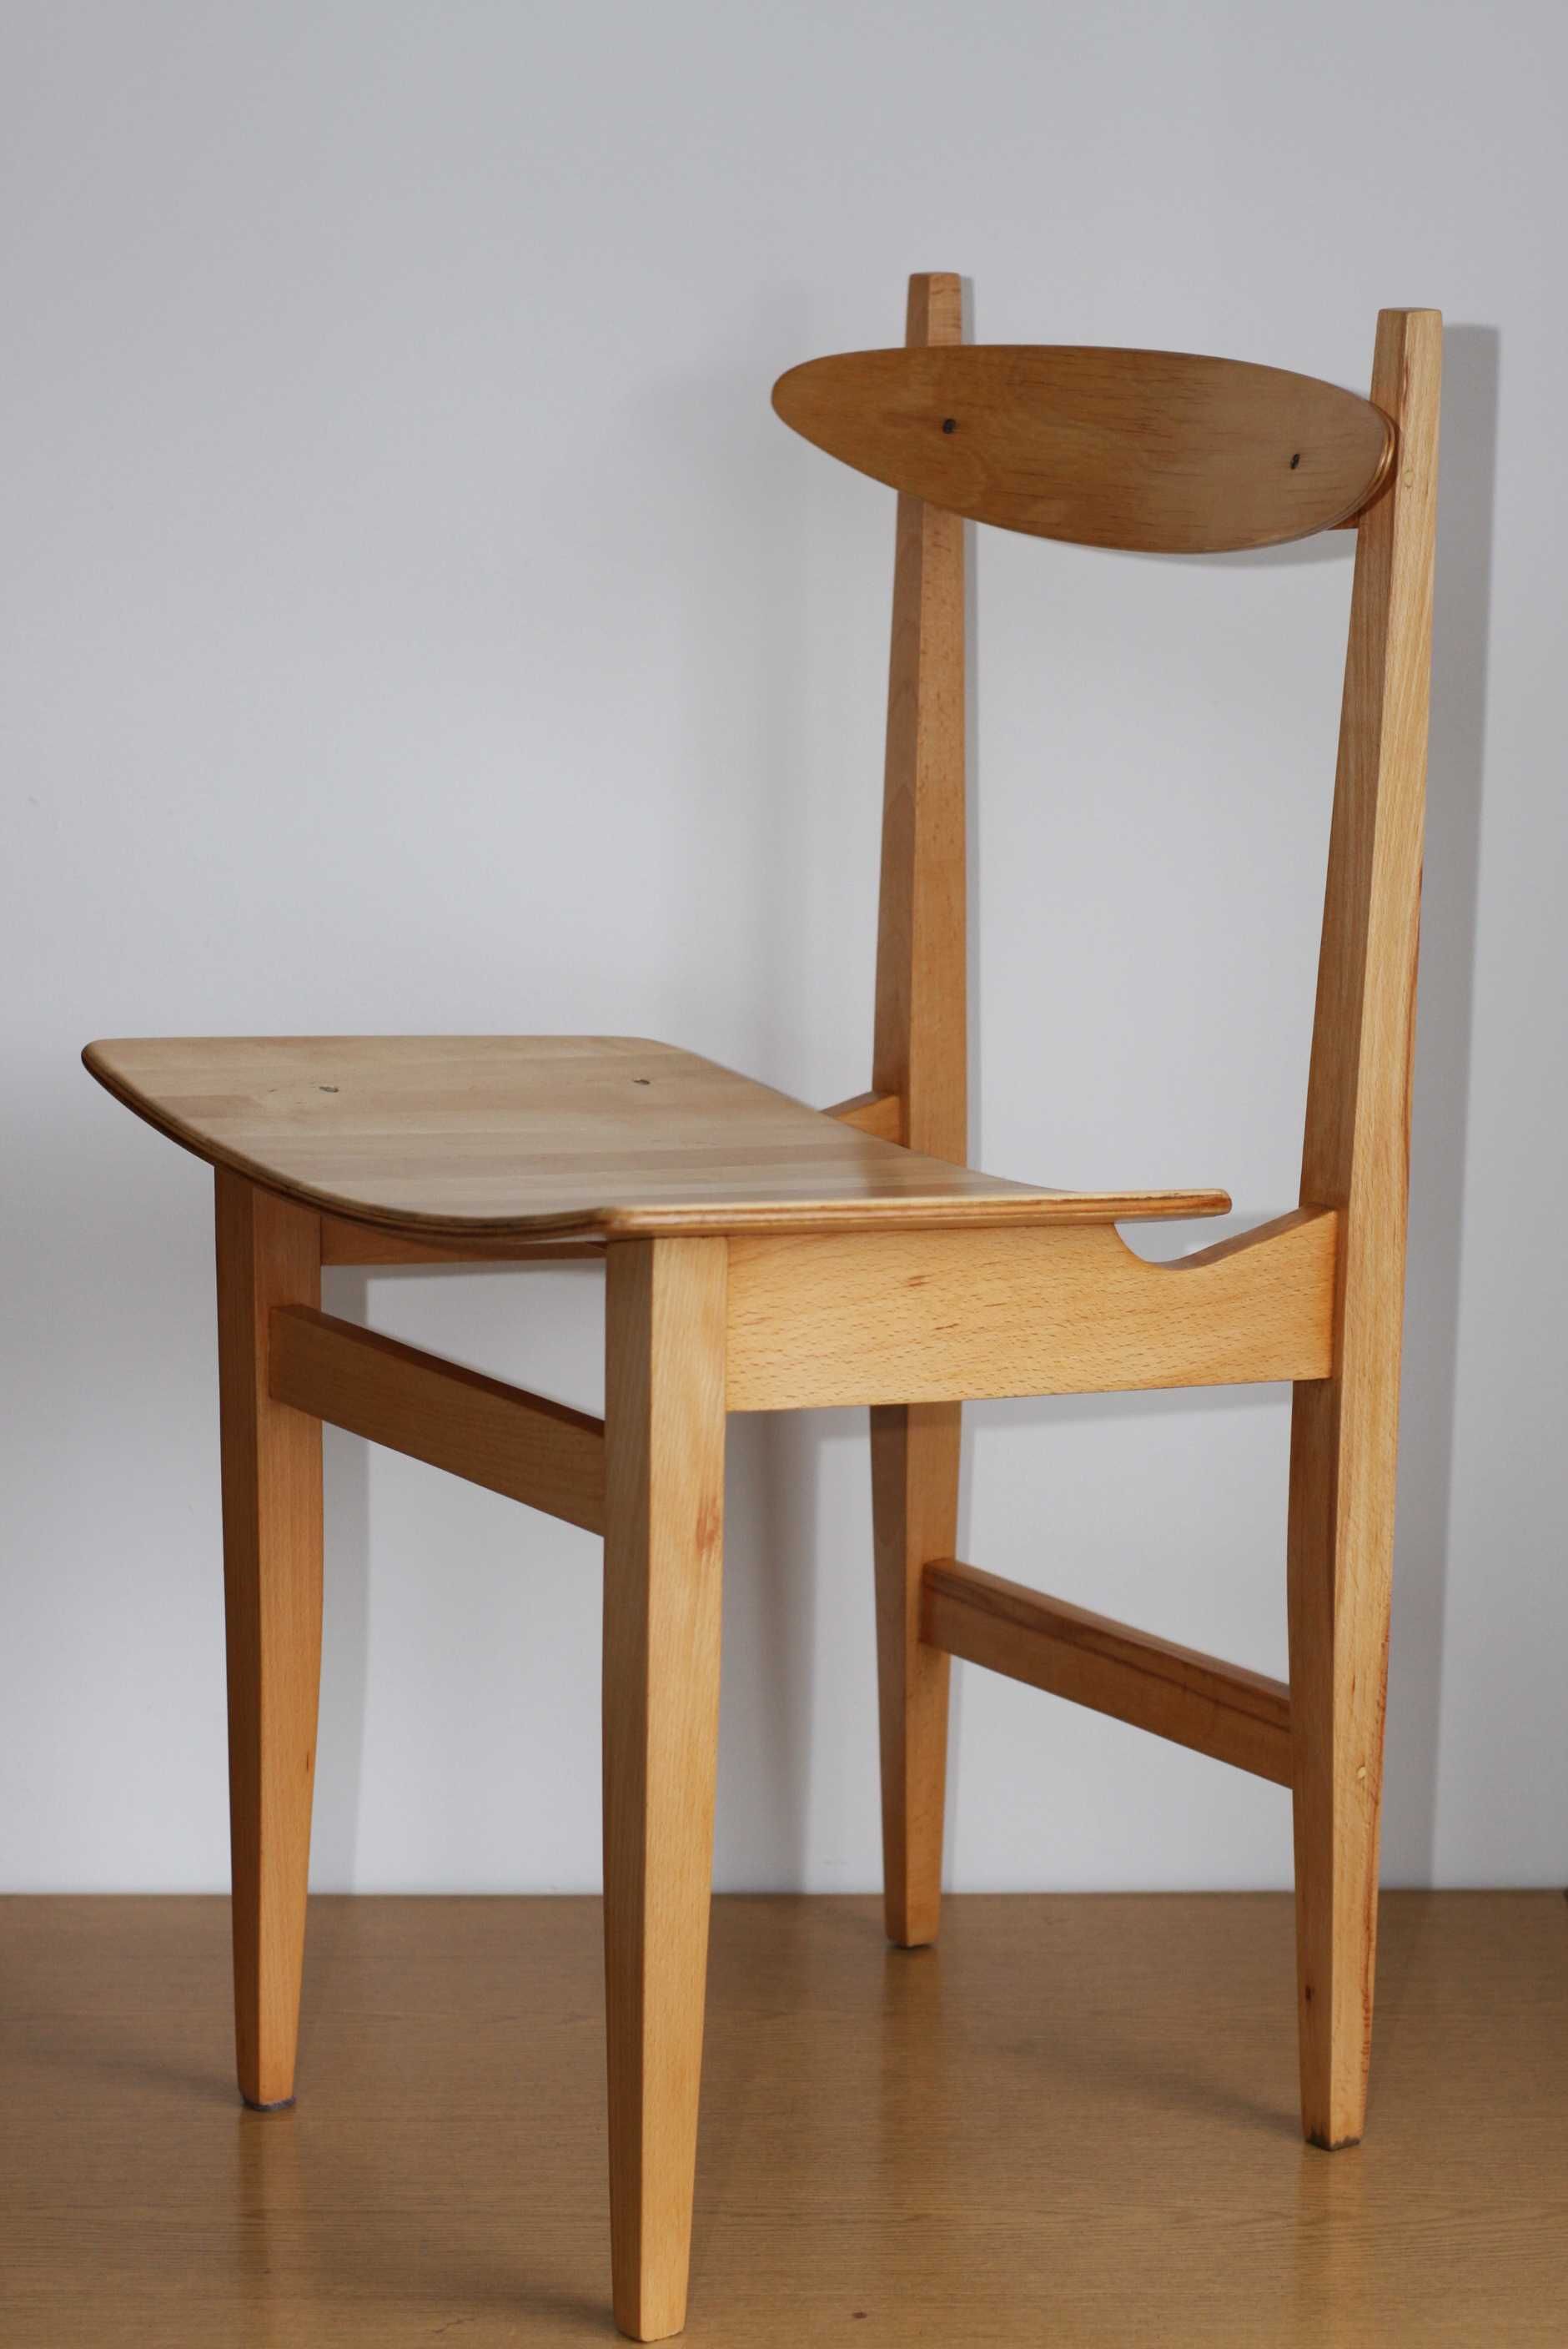 Krzesło stolarskie typ 200-102 odnowione Chomentowska